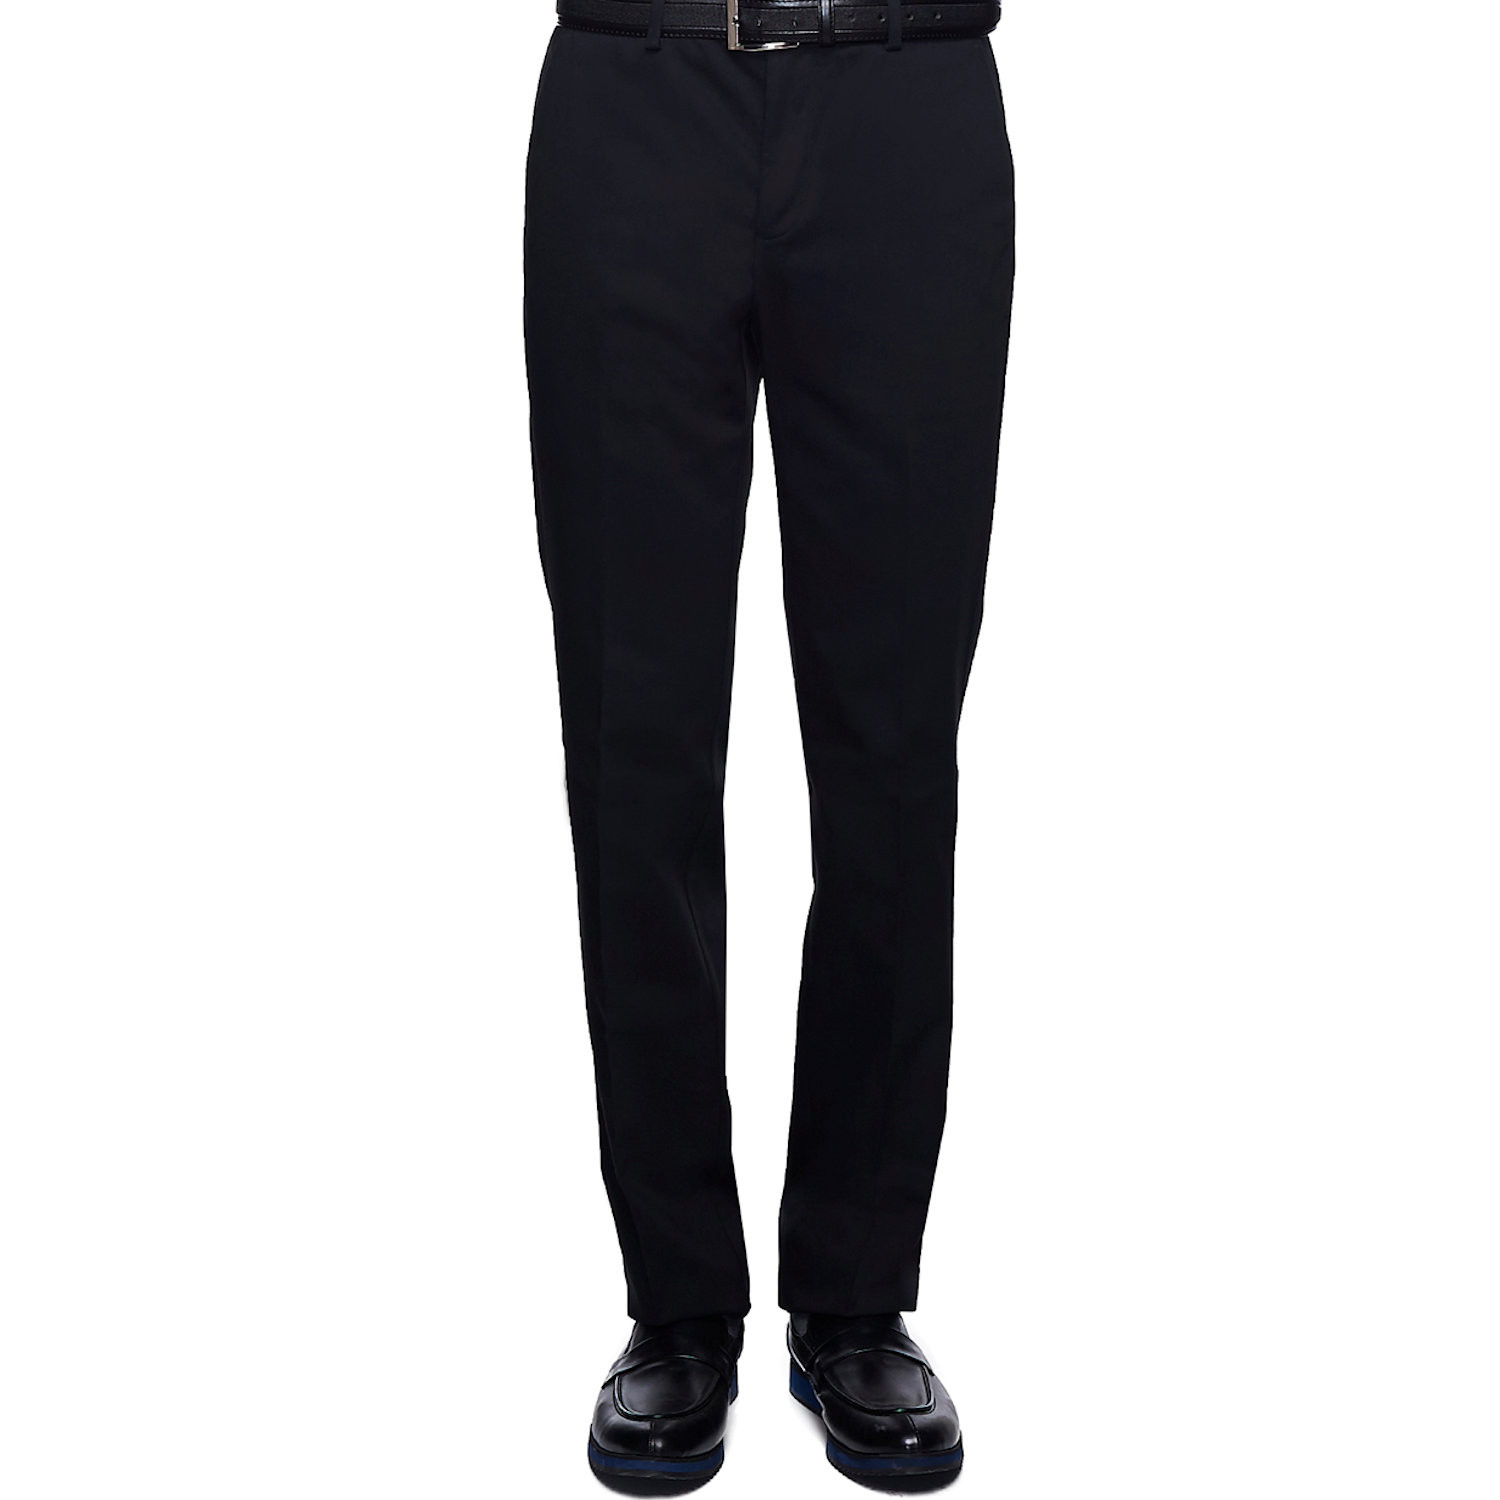 Dress Pant // Black // Non Iron (58WX34L) - Outerwear, Pants, & More ...